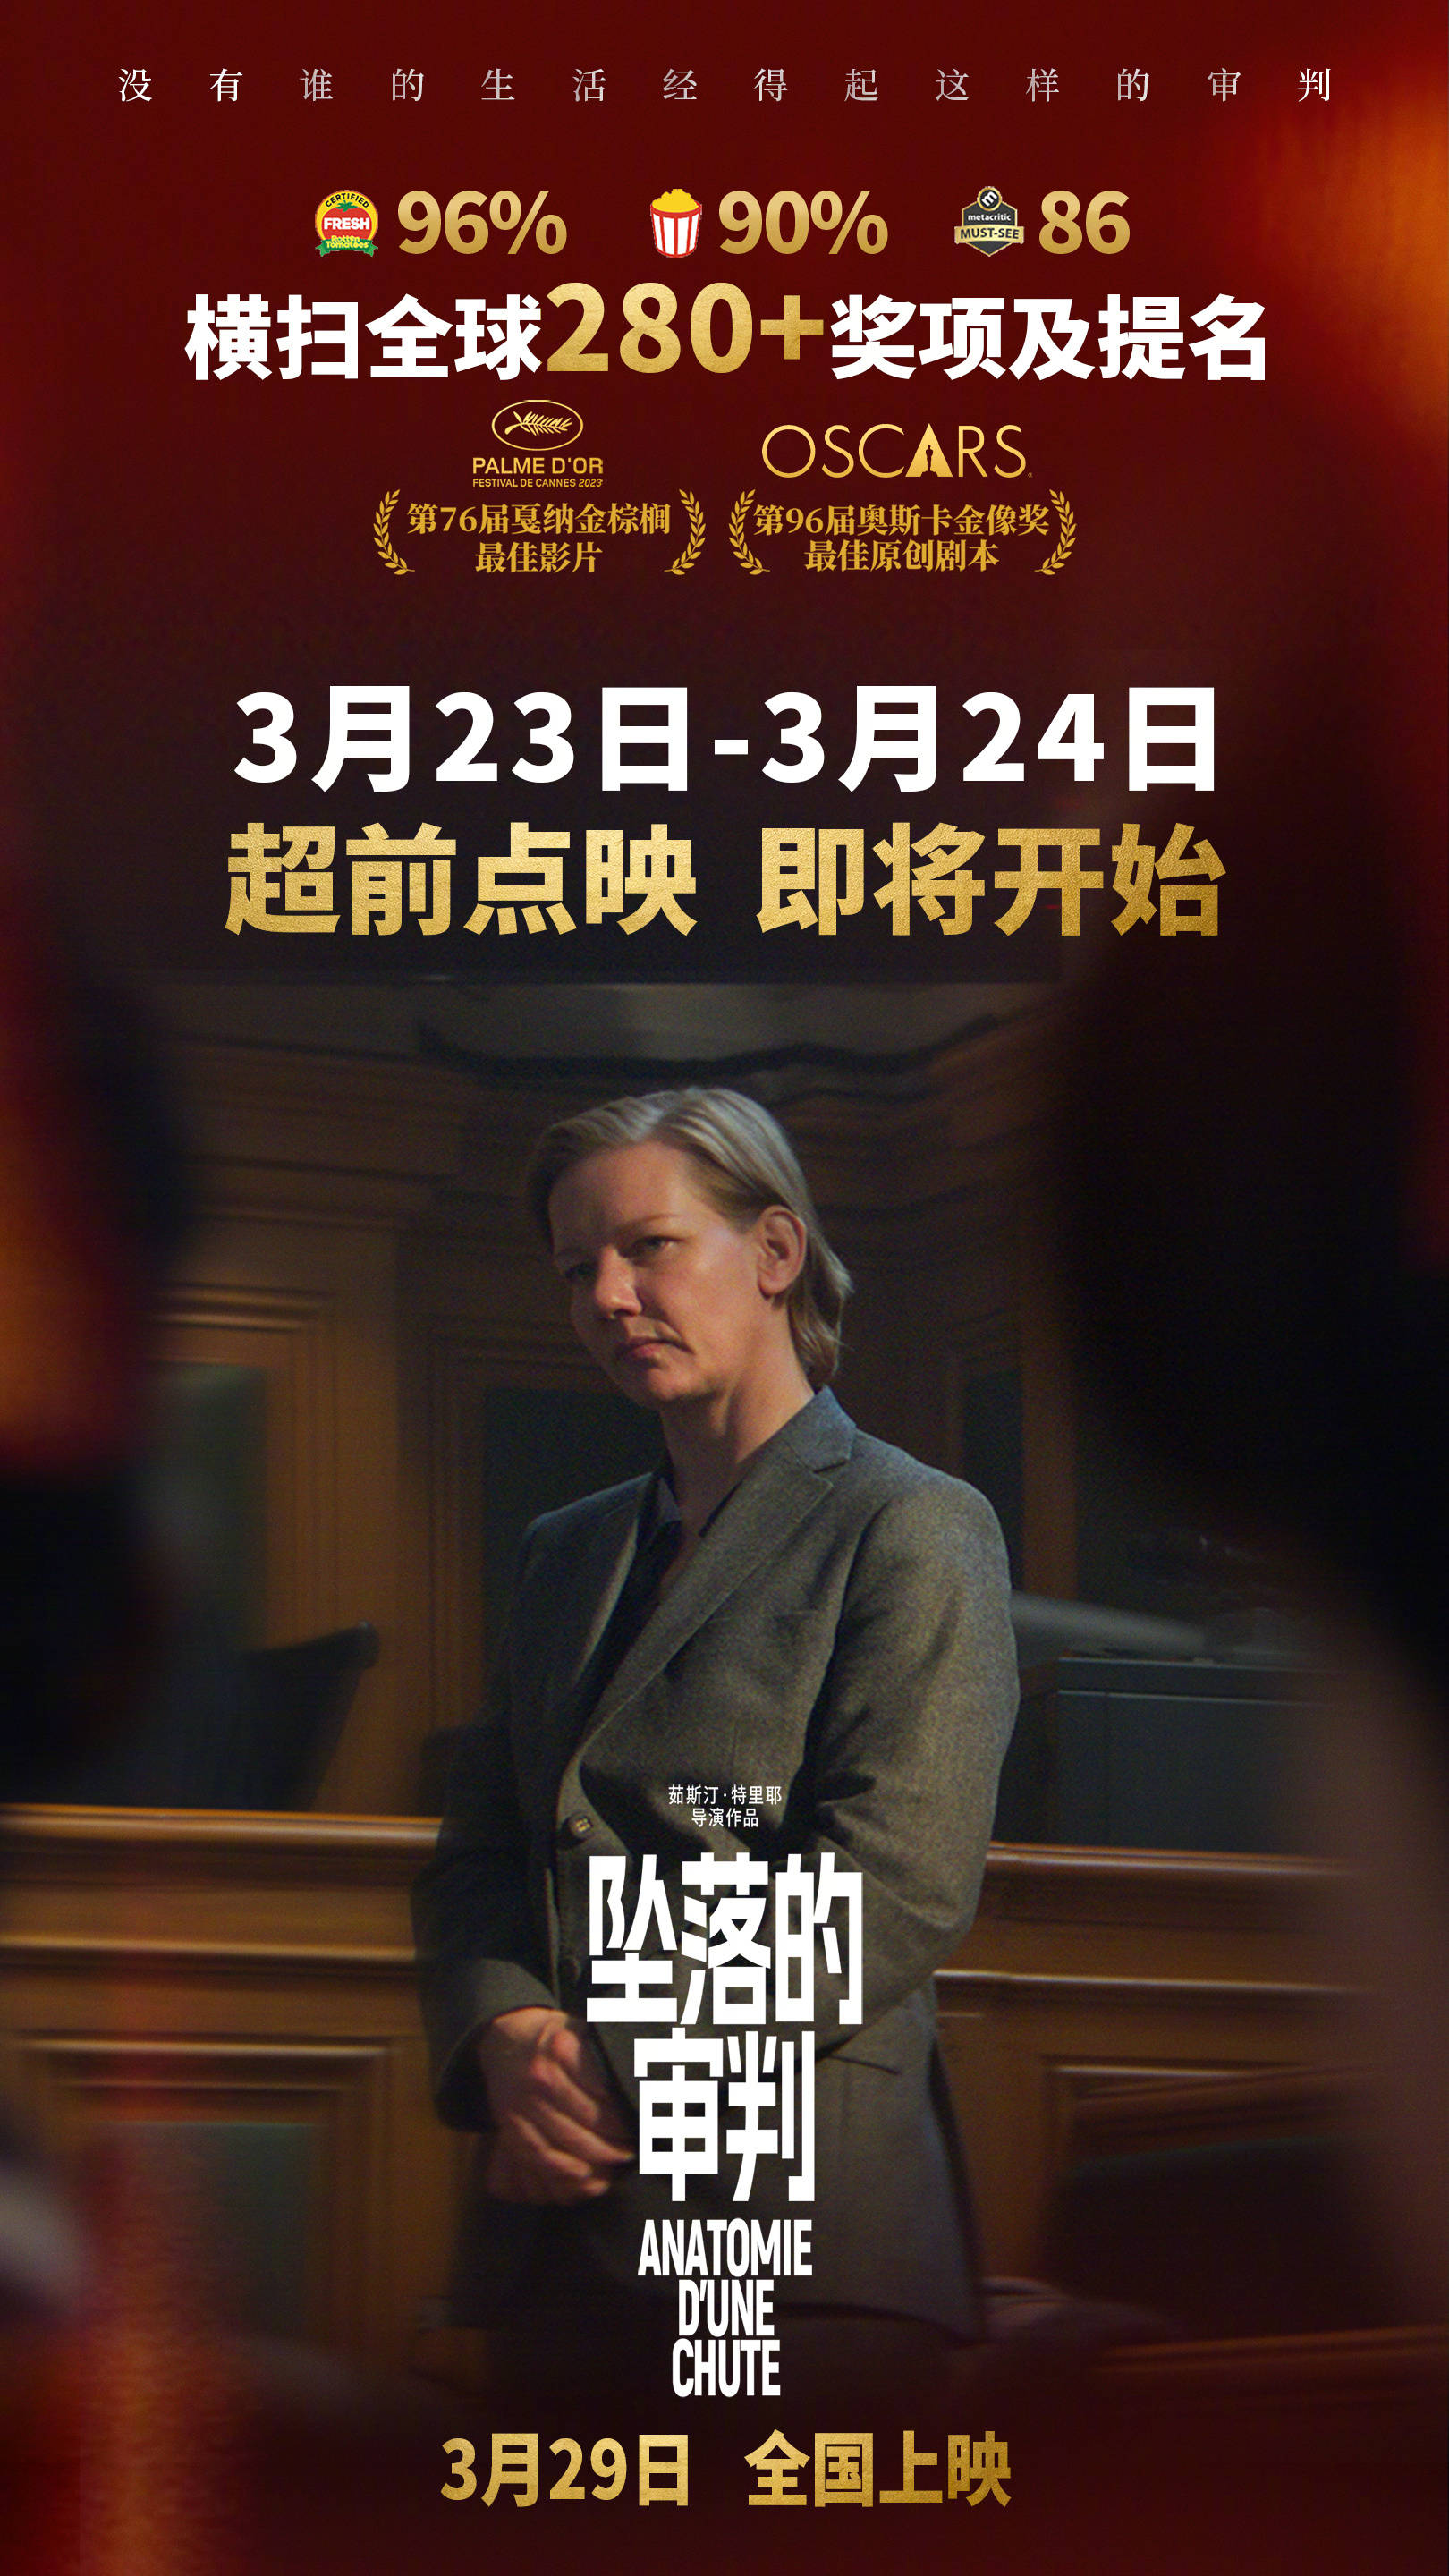 戛纳金棕榈大奖片《坠落的审判》将于3月23日-24日全国点映 3月29日正式公映